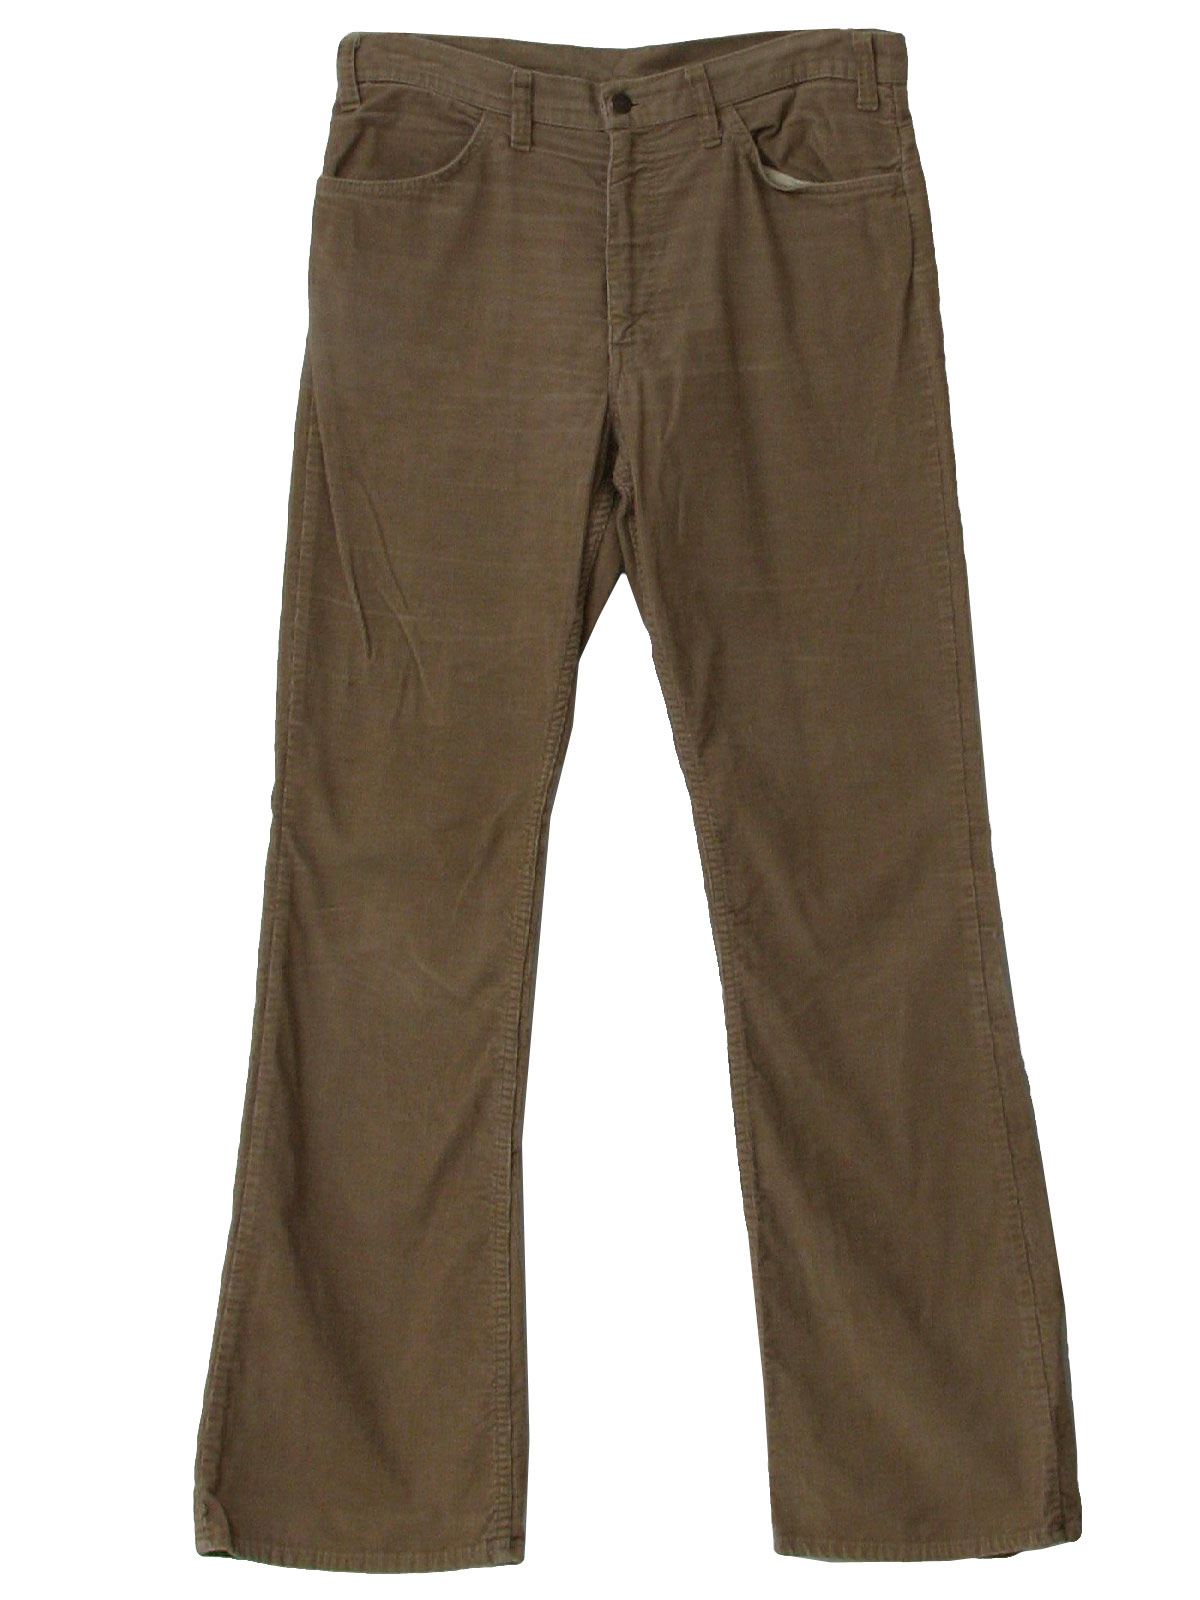 1970's Vintage Levis Bellbottom Pants: 70s -Levis- Mens khaki tan ...